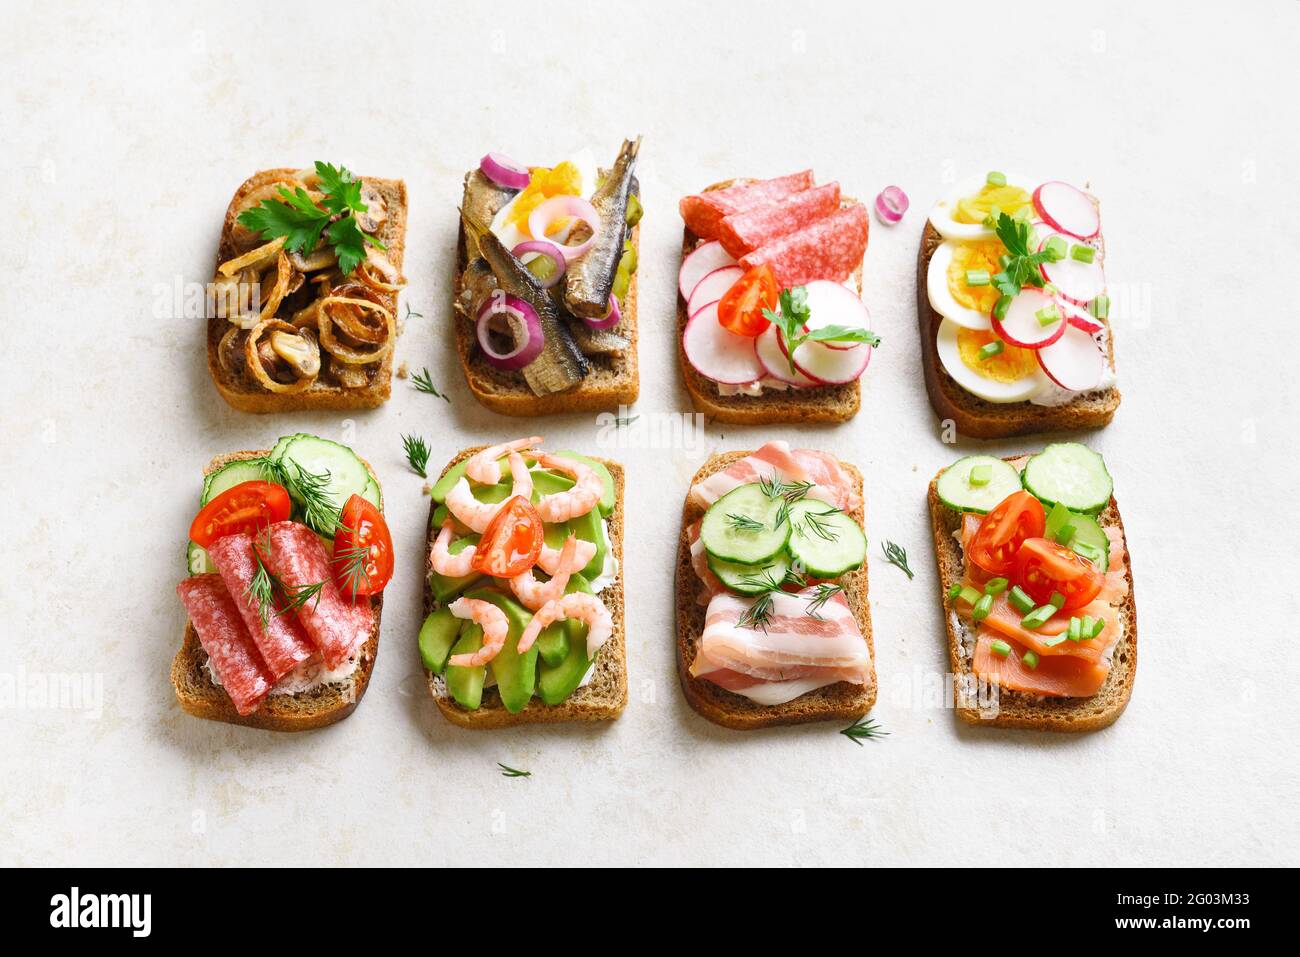 Ensemble de différents sandwichs avec viande, légumes et fruits de mer sur fond de pierre légère. En-cas savoureux et sains. Banque D'Images